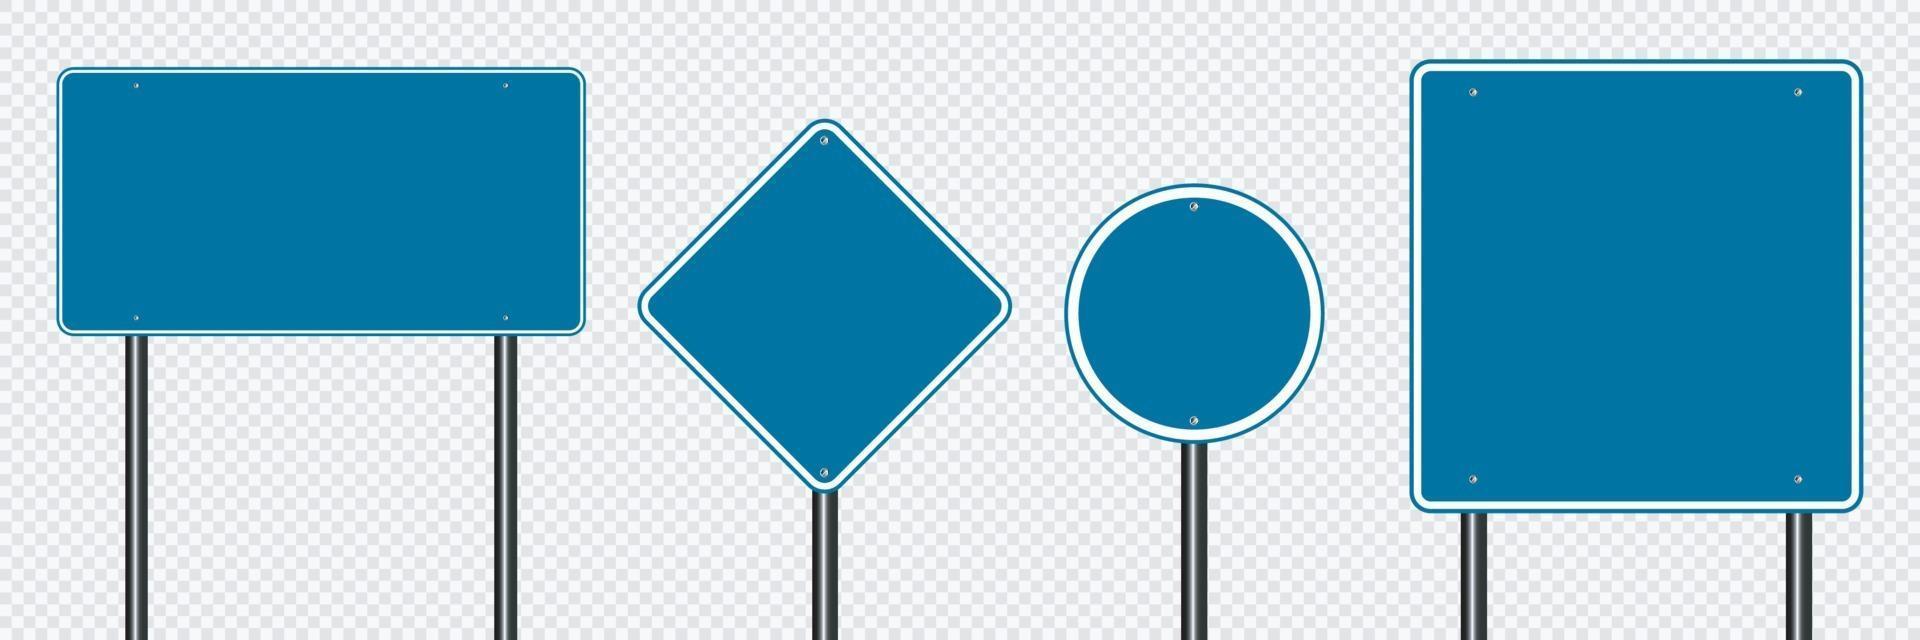 conjunto de símbolos sinal de estrada azul em fundo transparente vetor